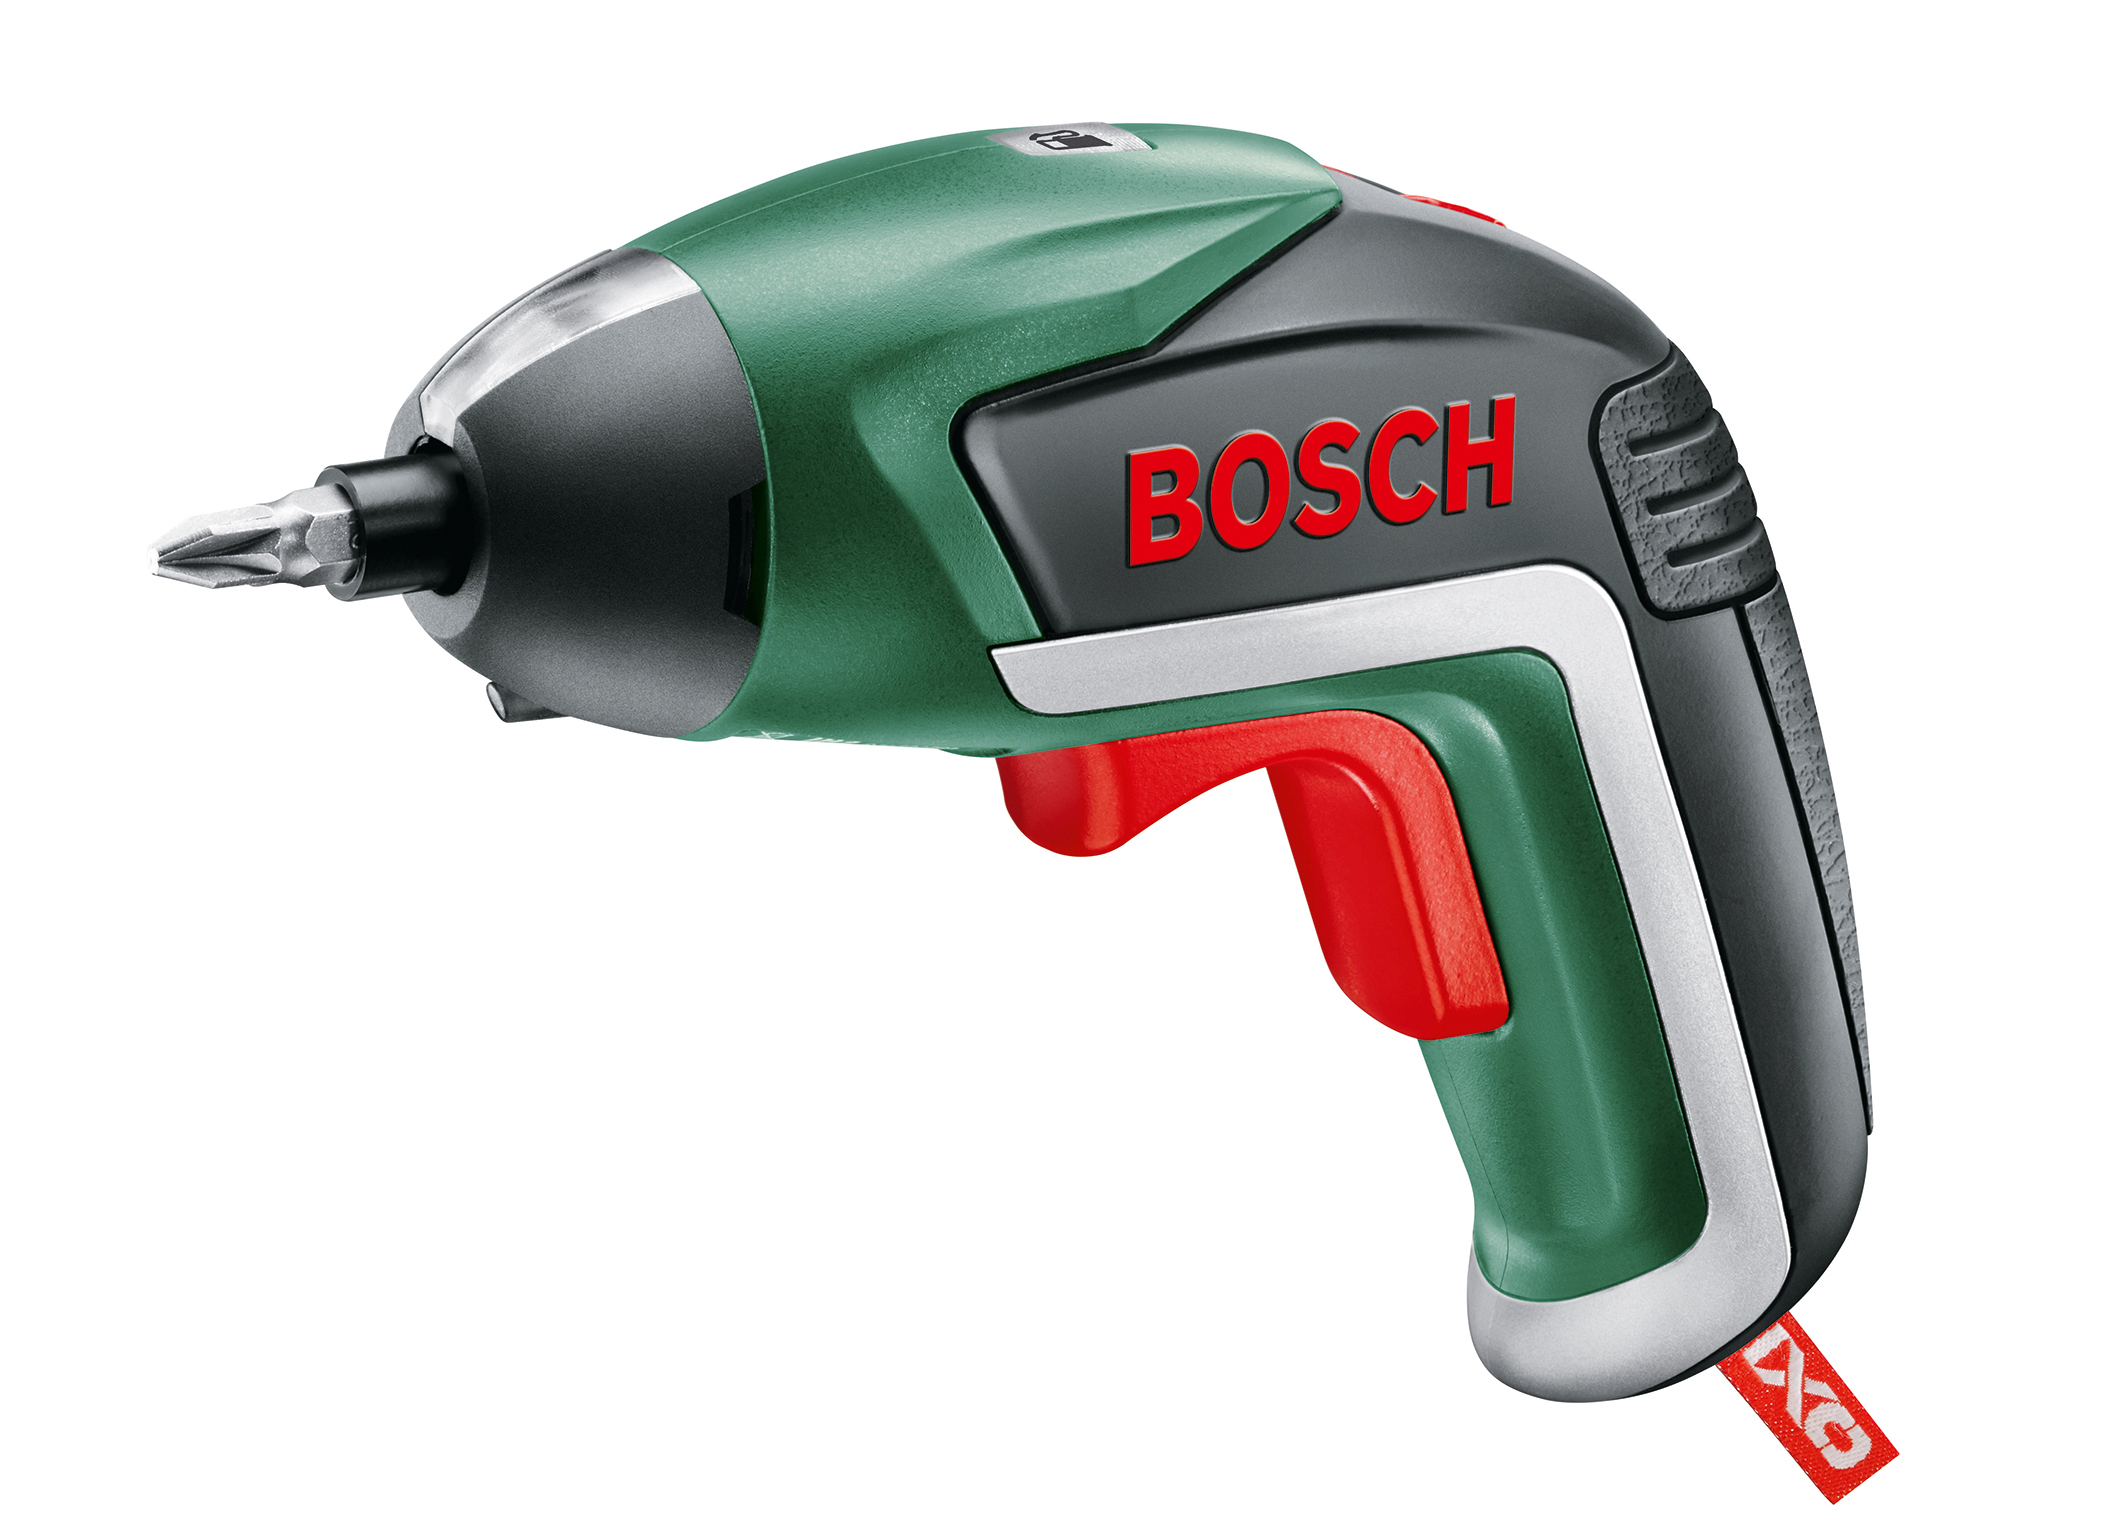 Record de producţie: Bosch produce mai multe scule electrice ca niciodată. Aproximativ 50 de milioane de dispozitive în 2015